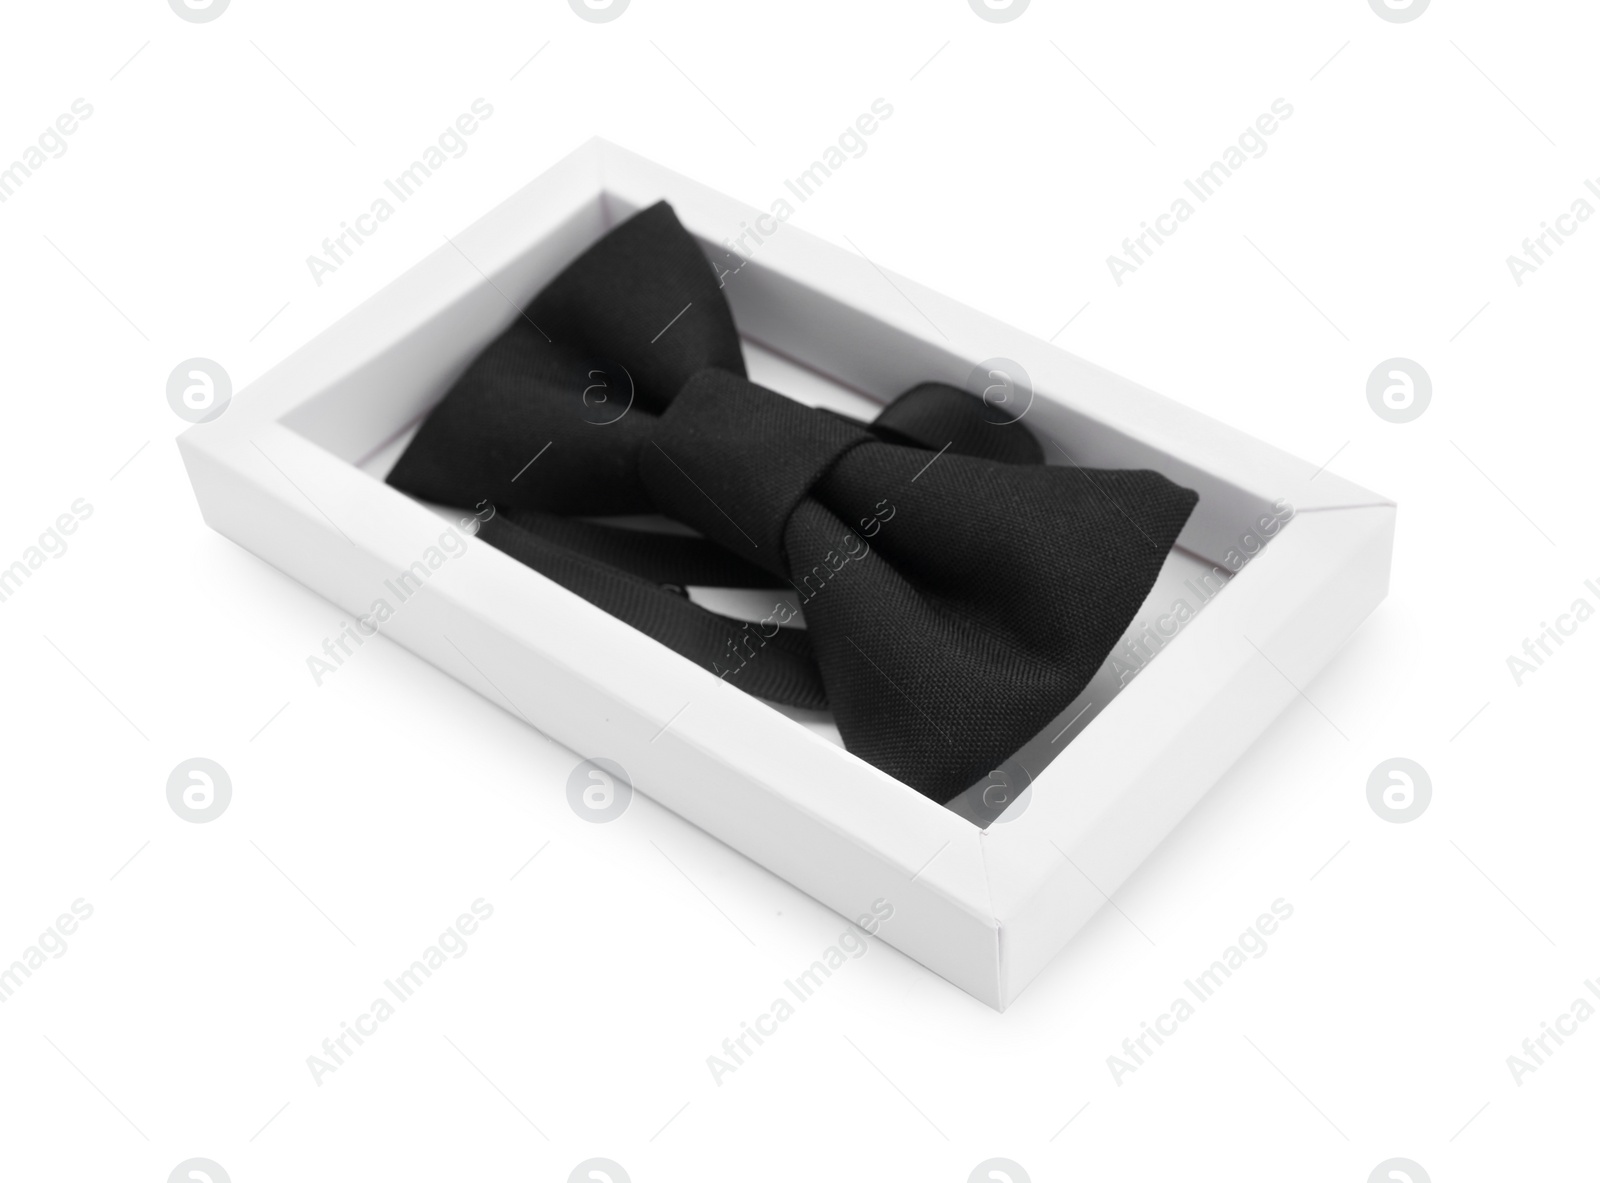 Photo of Stylish black bow tie on white background